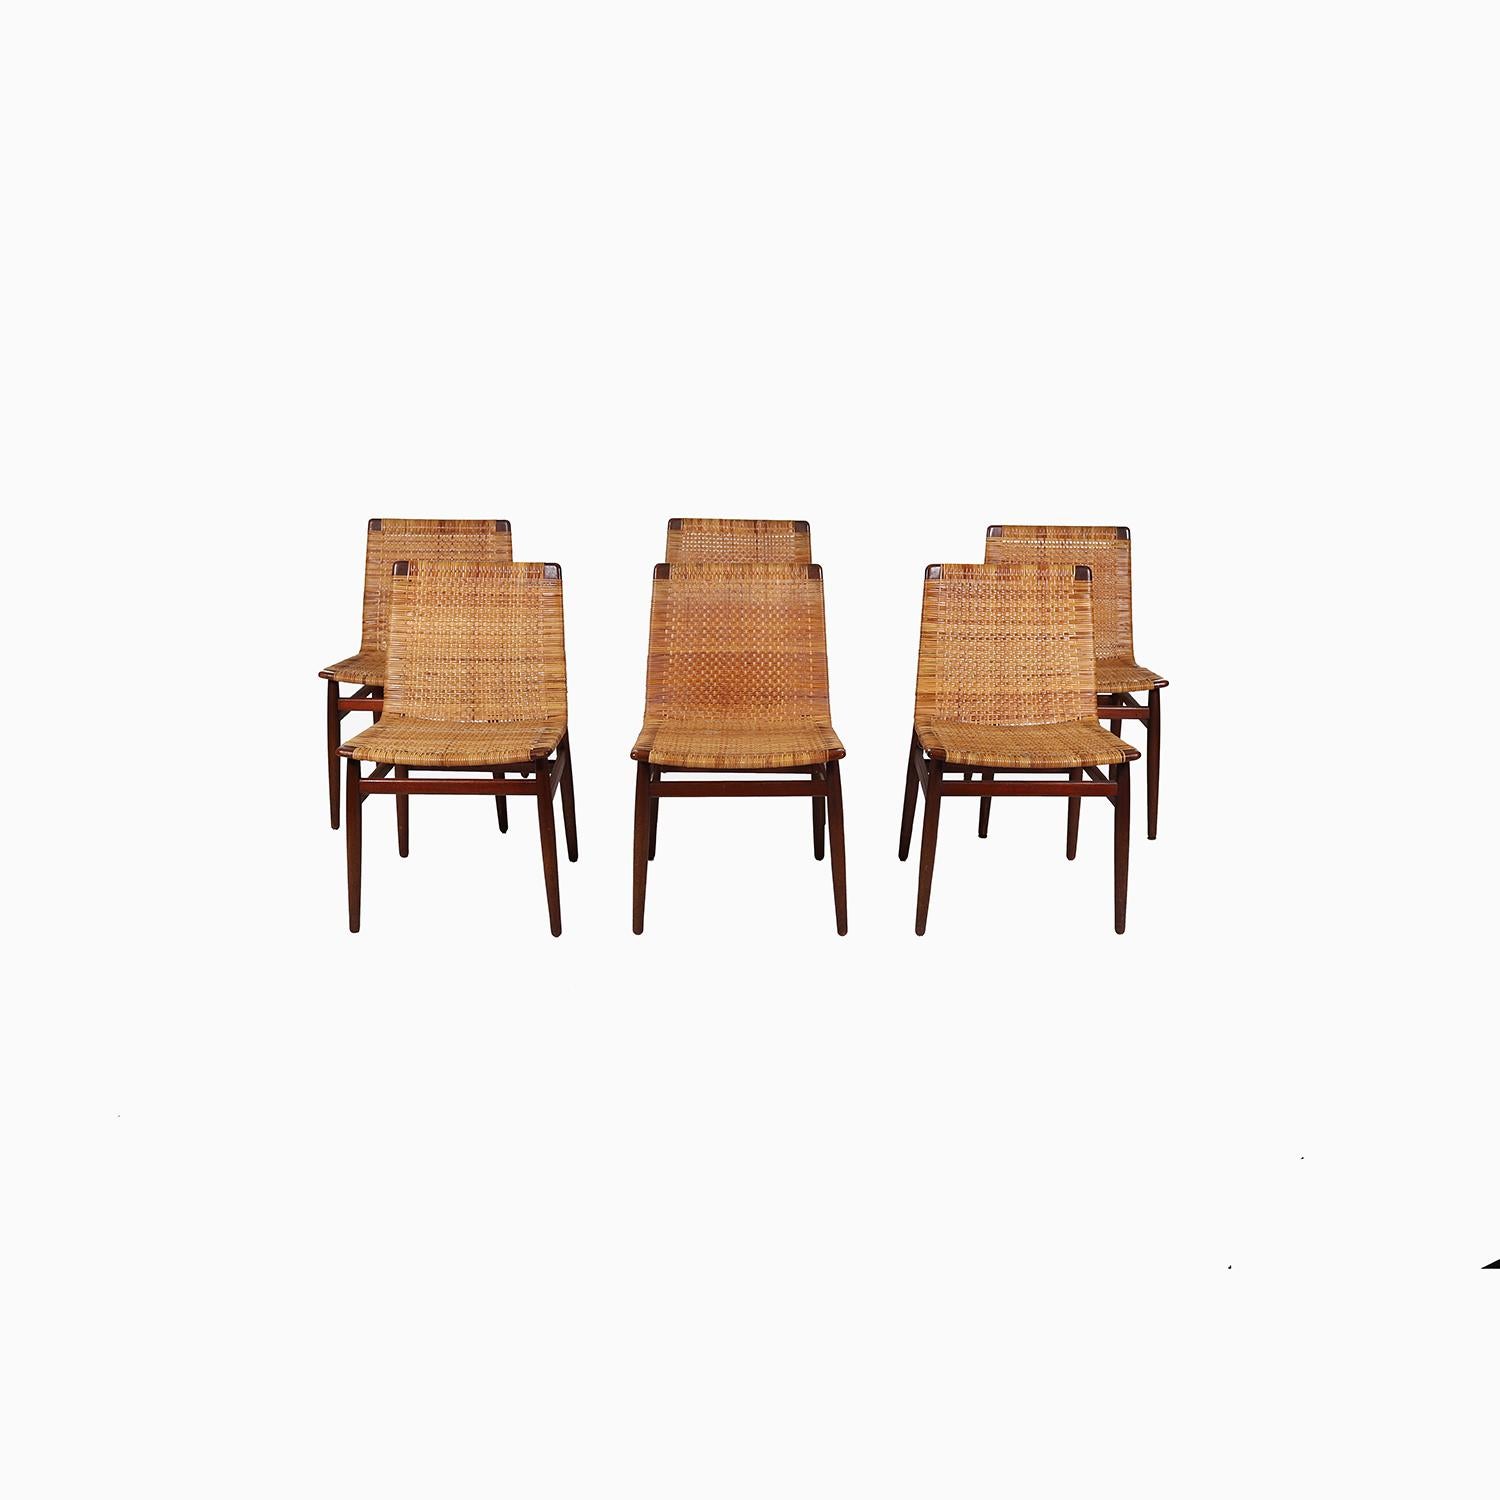 Ein Satz von sechs seltenen Esszimmerstühlen aus Teakholz und Binderohr, entworfen von Jørgen Høj und hergestellt von Thorald Madsen. Die Restaurierung des Rahmens und des Rohrs wird beim Kauf abgeschlossen sein. Die Vorlaufzeit für die